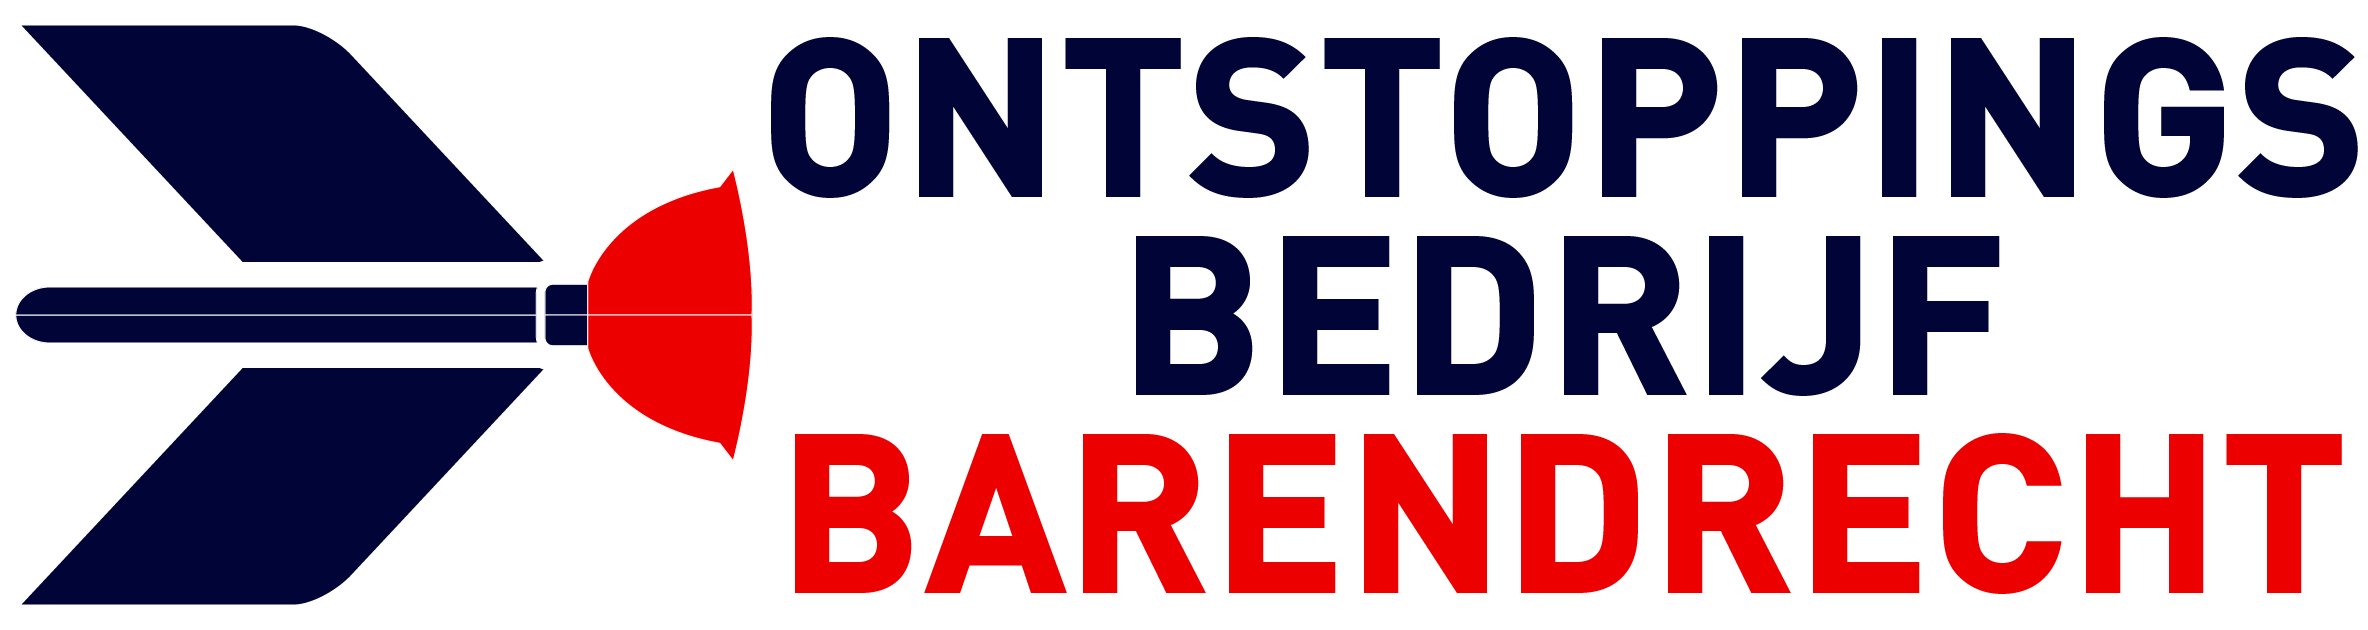 Ontstoppingsbedrijf Barendrecht logo